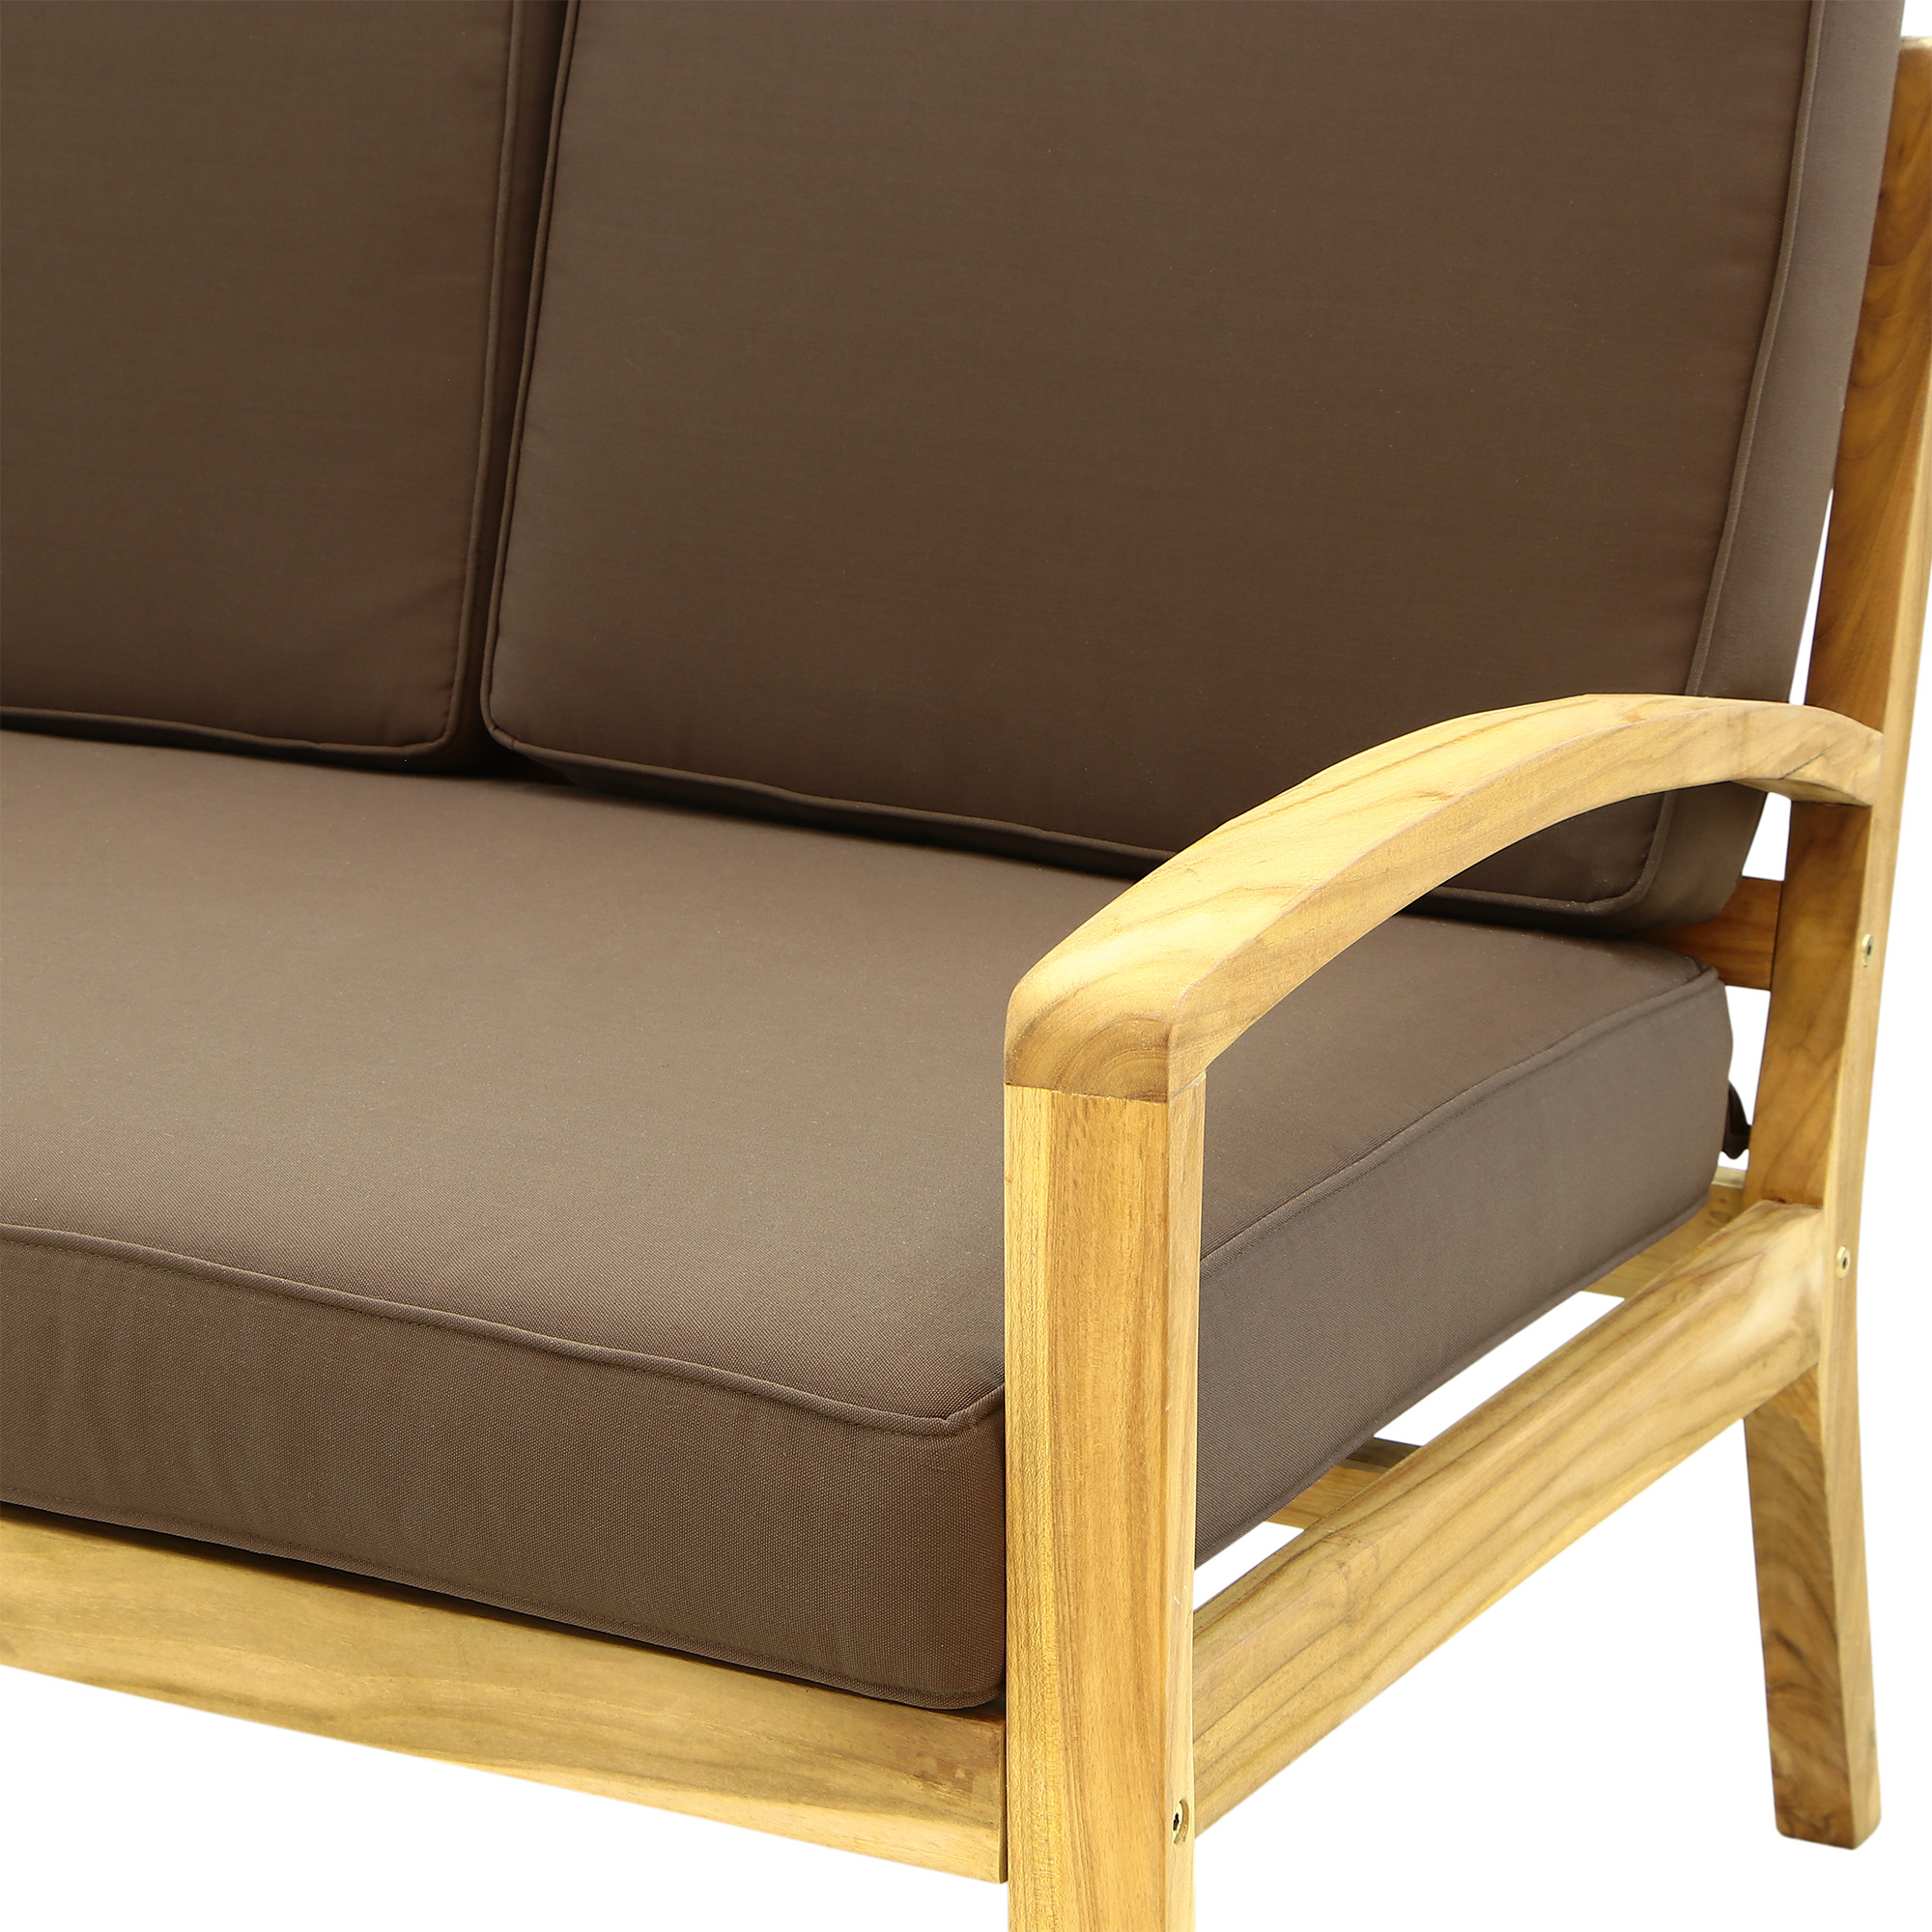 Комплект мебели Jepara rimini 4 предмета, цвет дерево, размер 192х82 см - фото 4